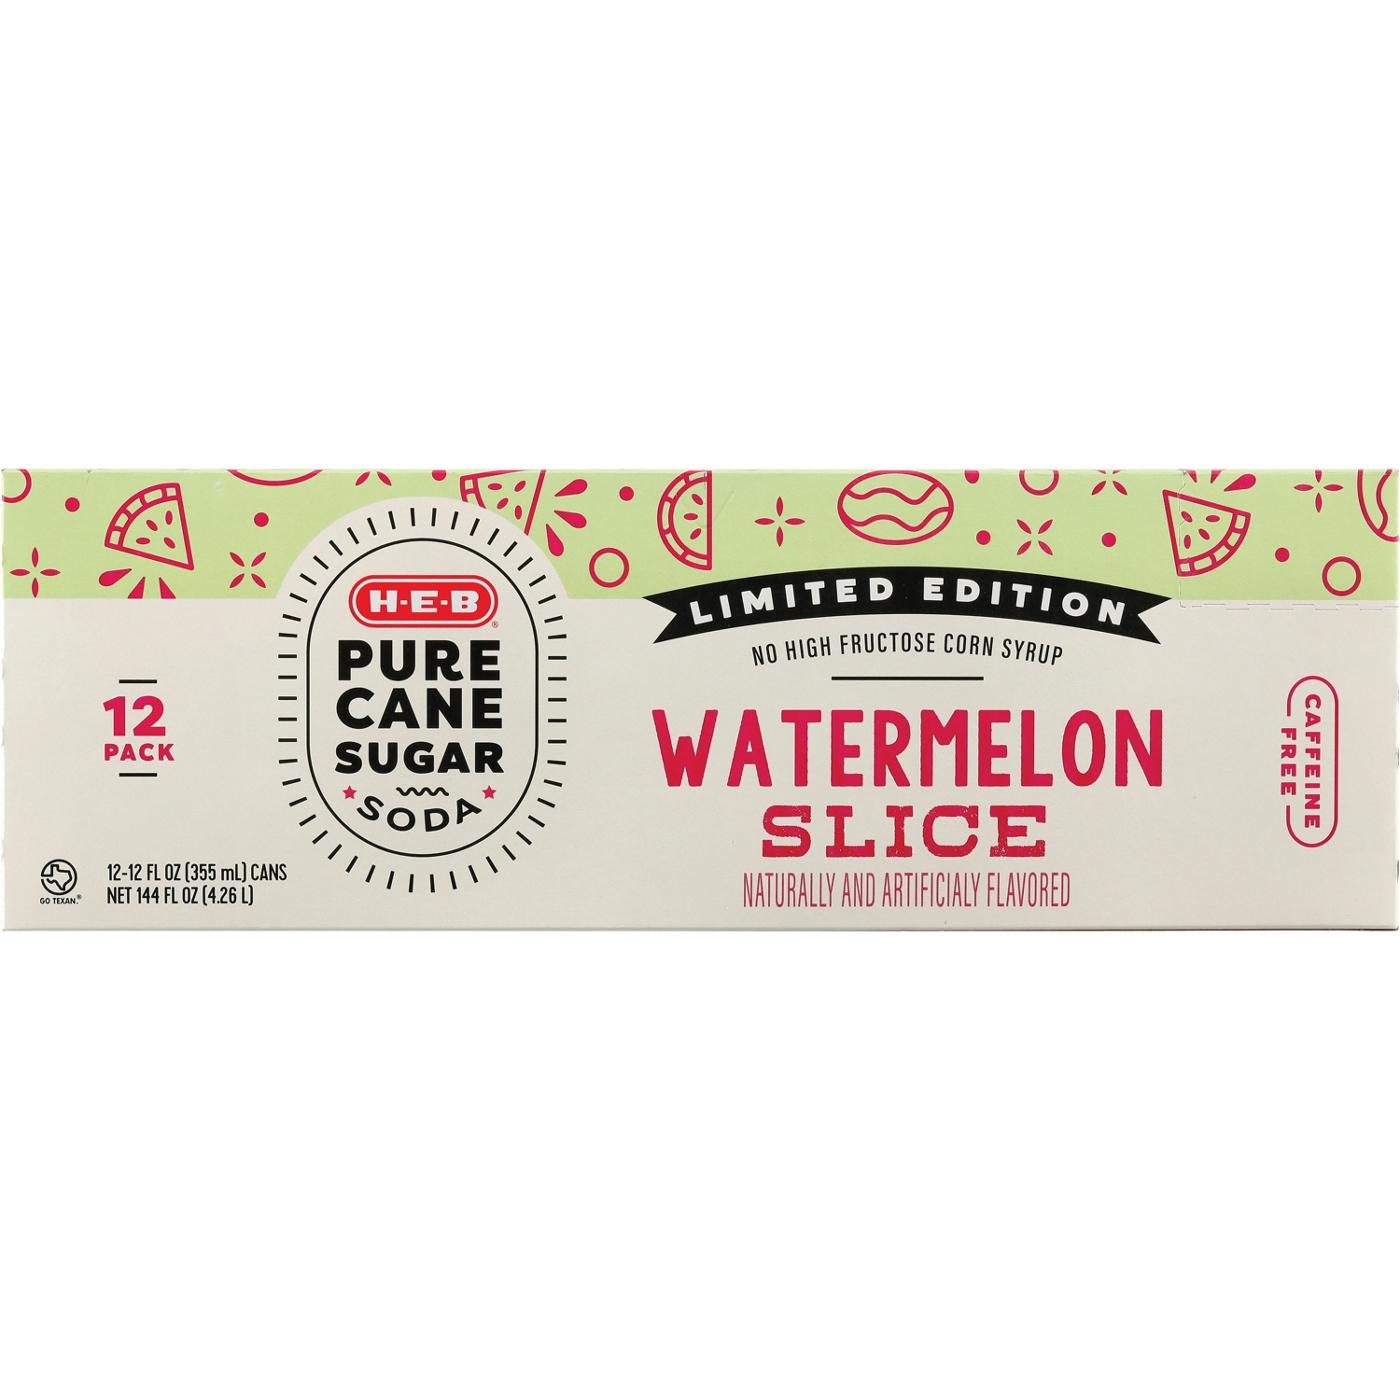 H-E-B Pure Cane Sugar Watermelon Slice Soda 12 pk Cans; image 1 of 2